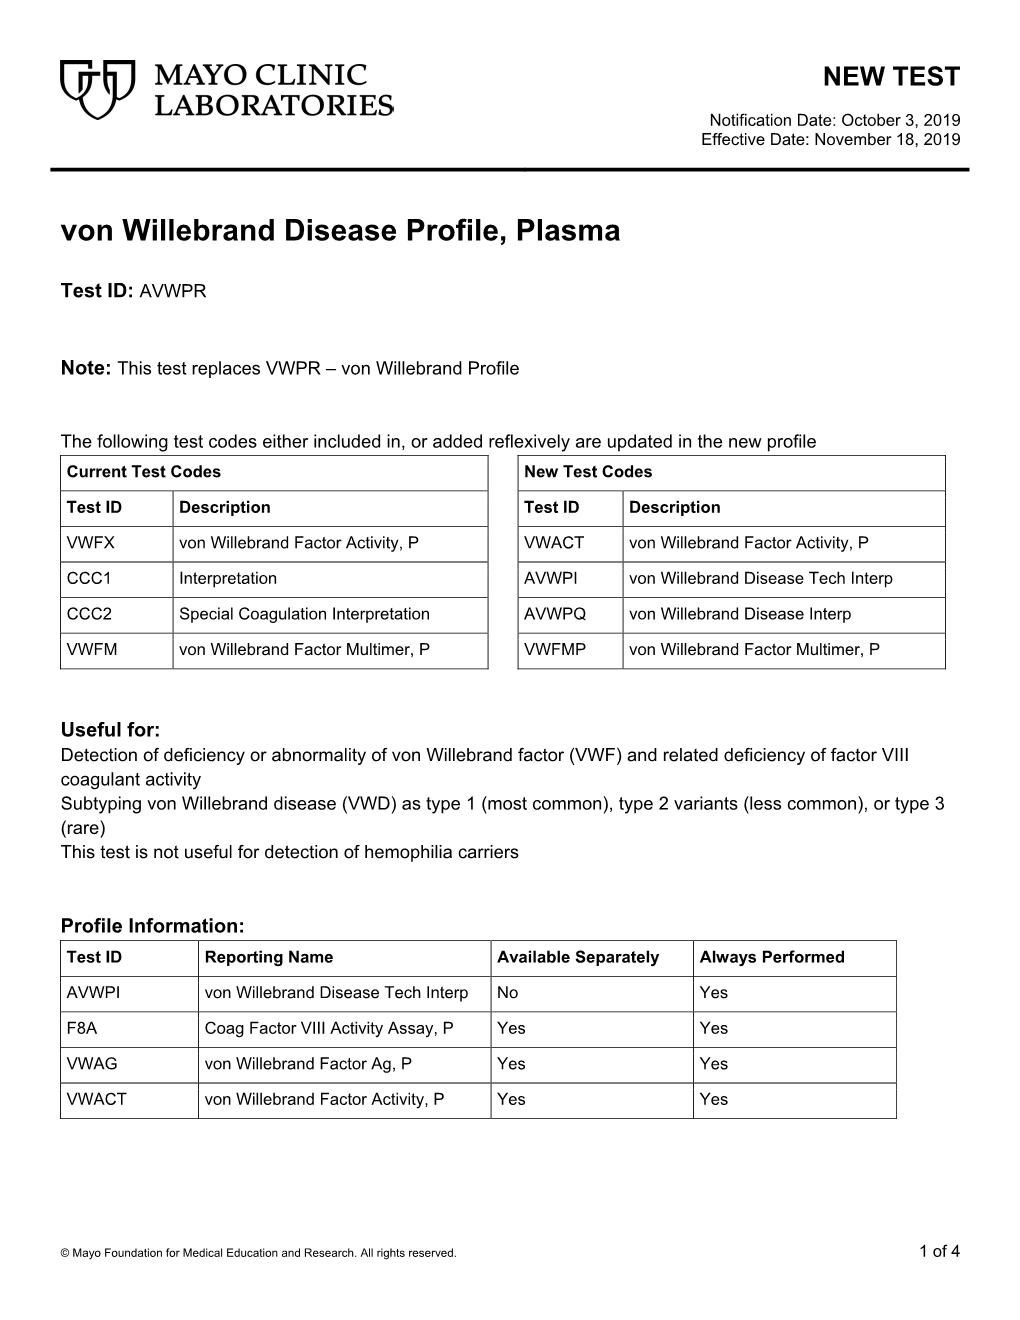 Von Willebrand Disease Profile, Plasma